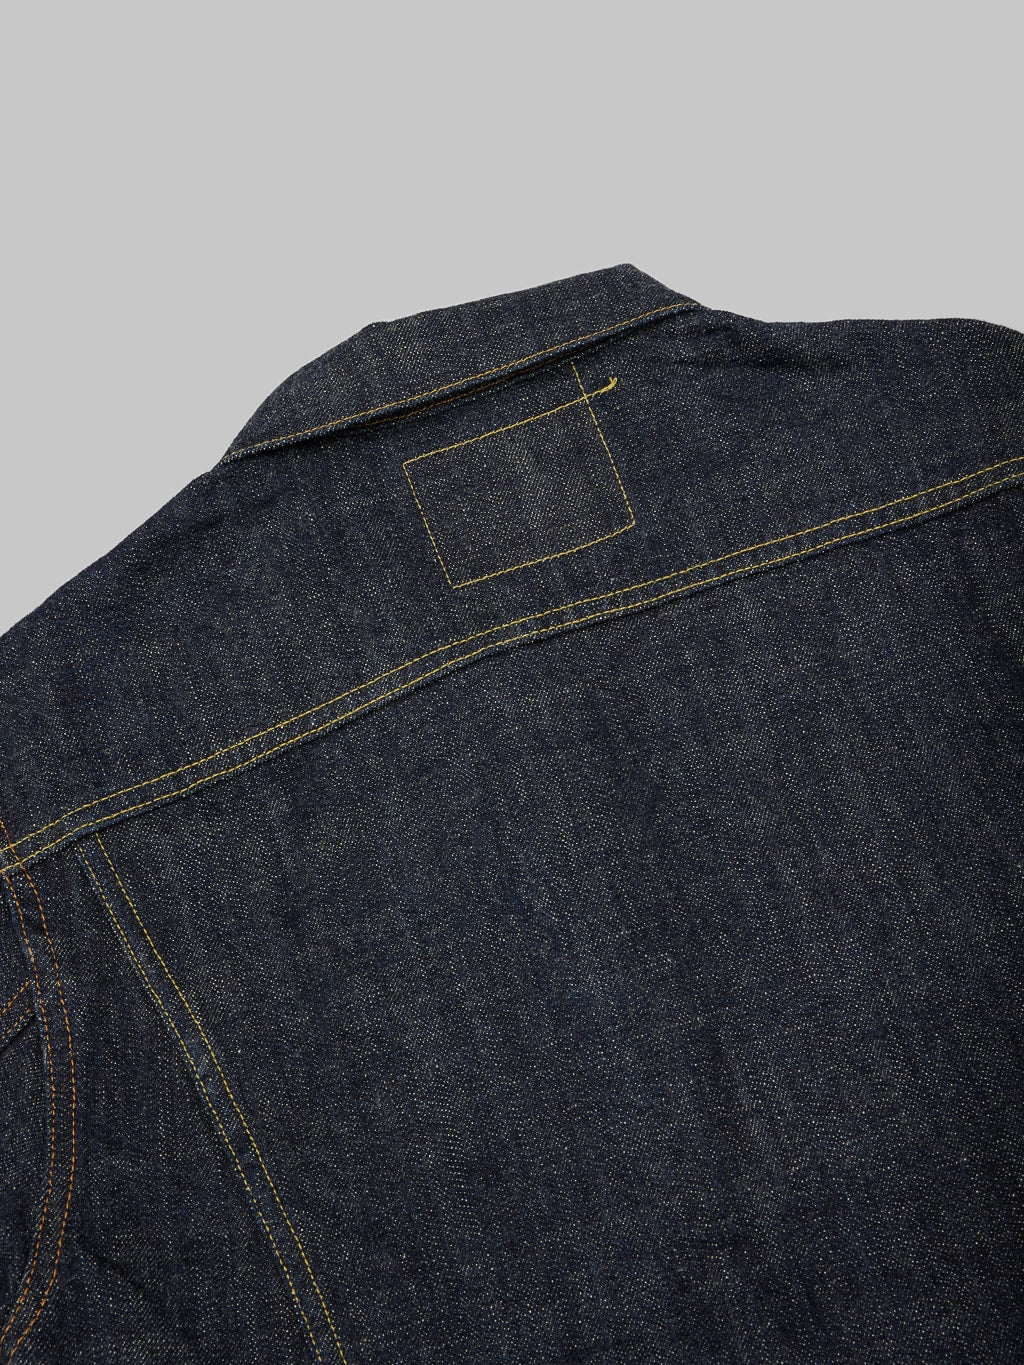 Tanuki zetto benkei type III jacket back stitching details